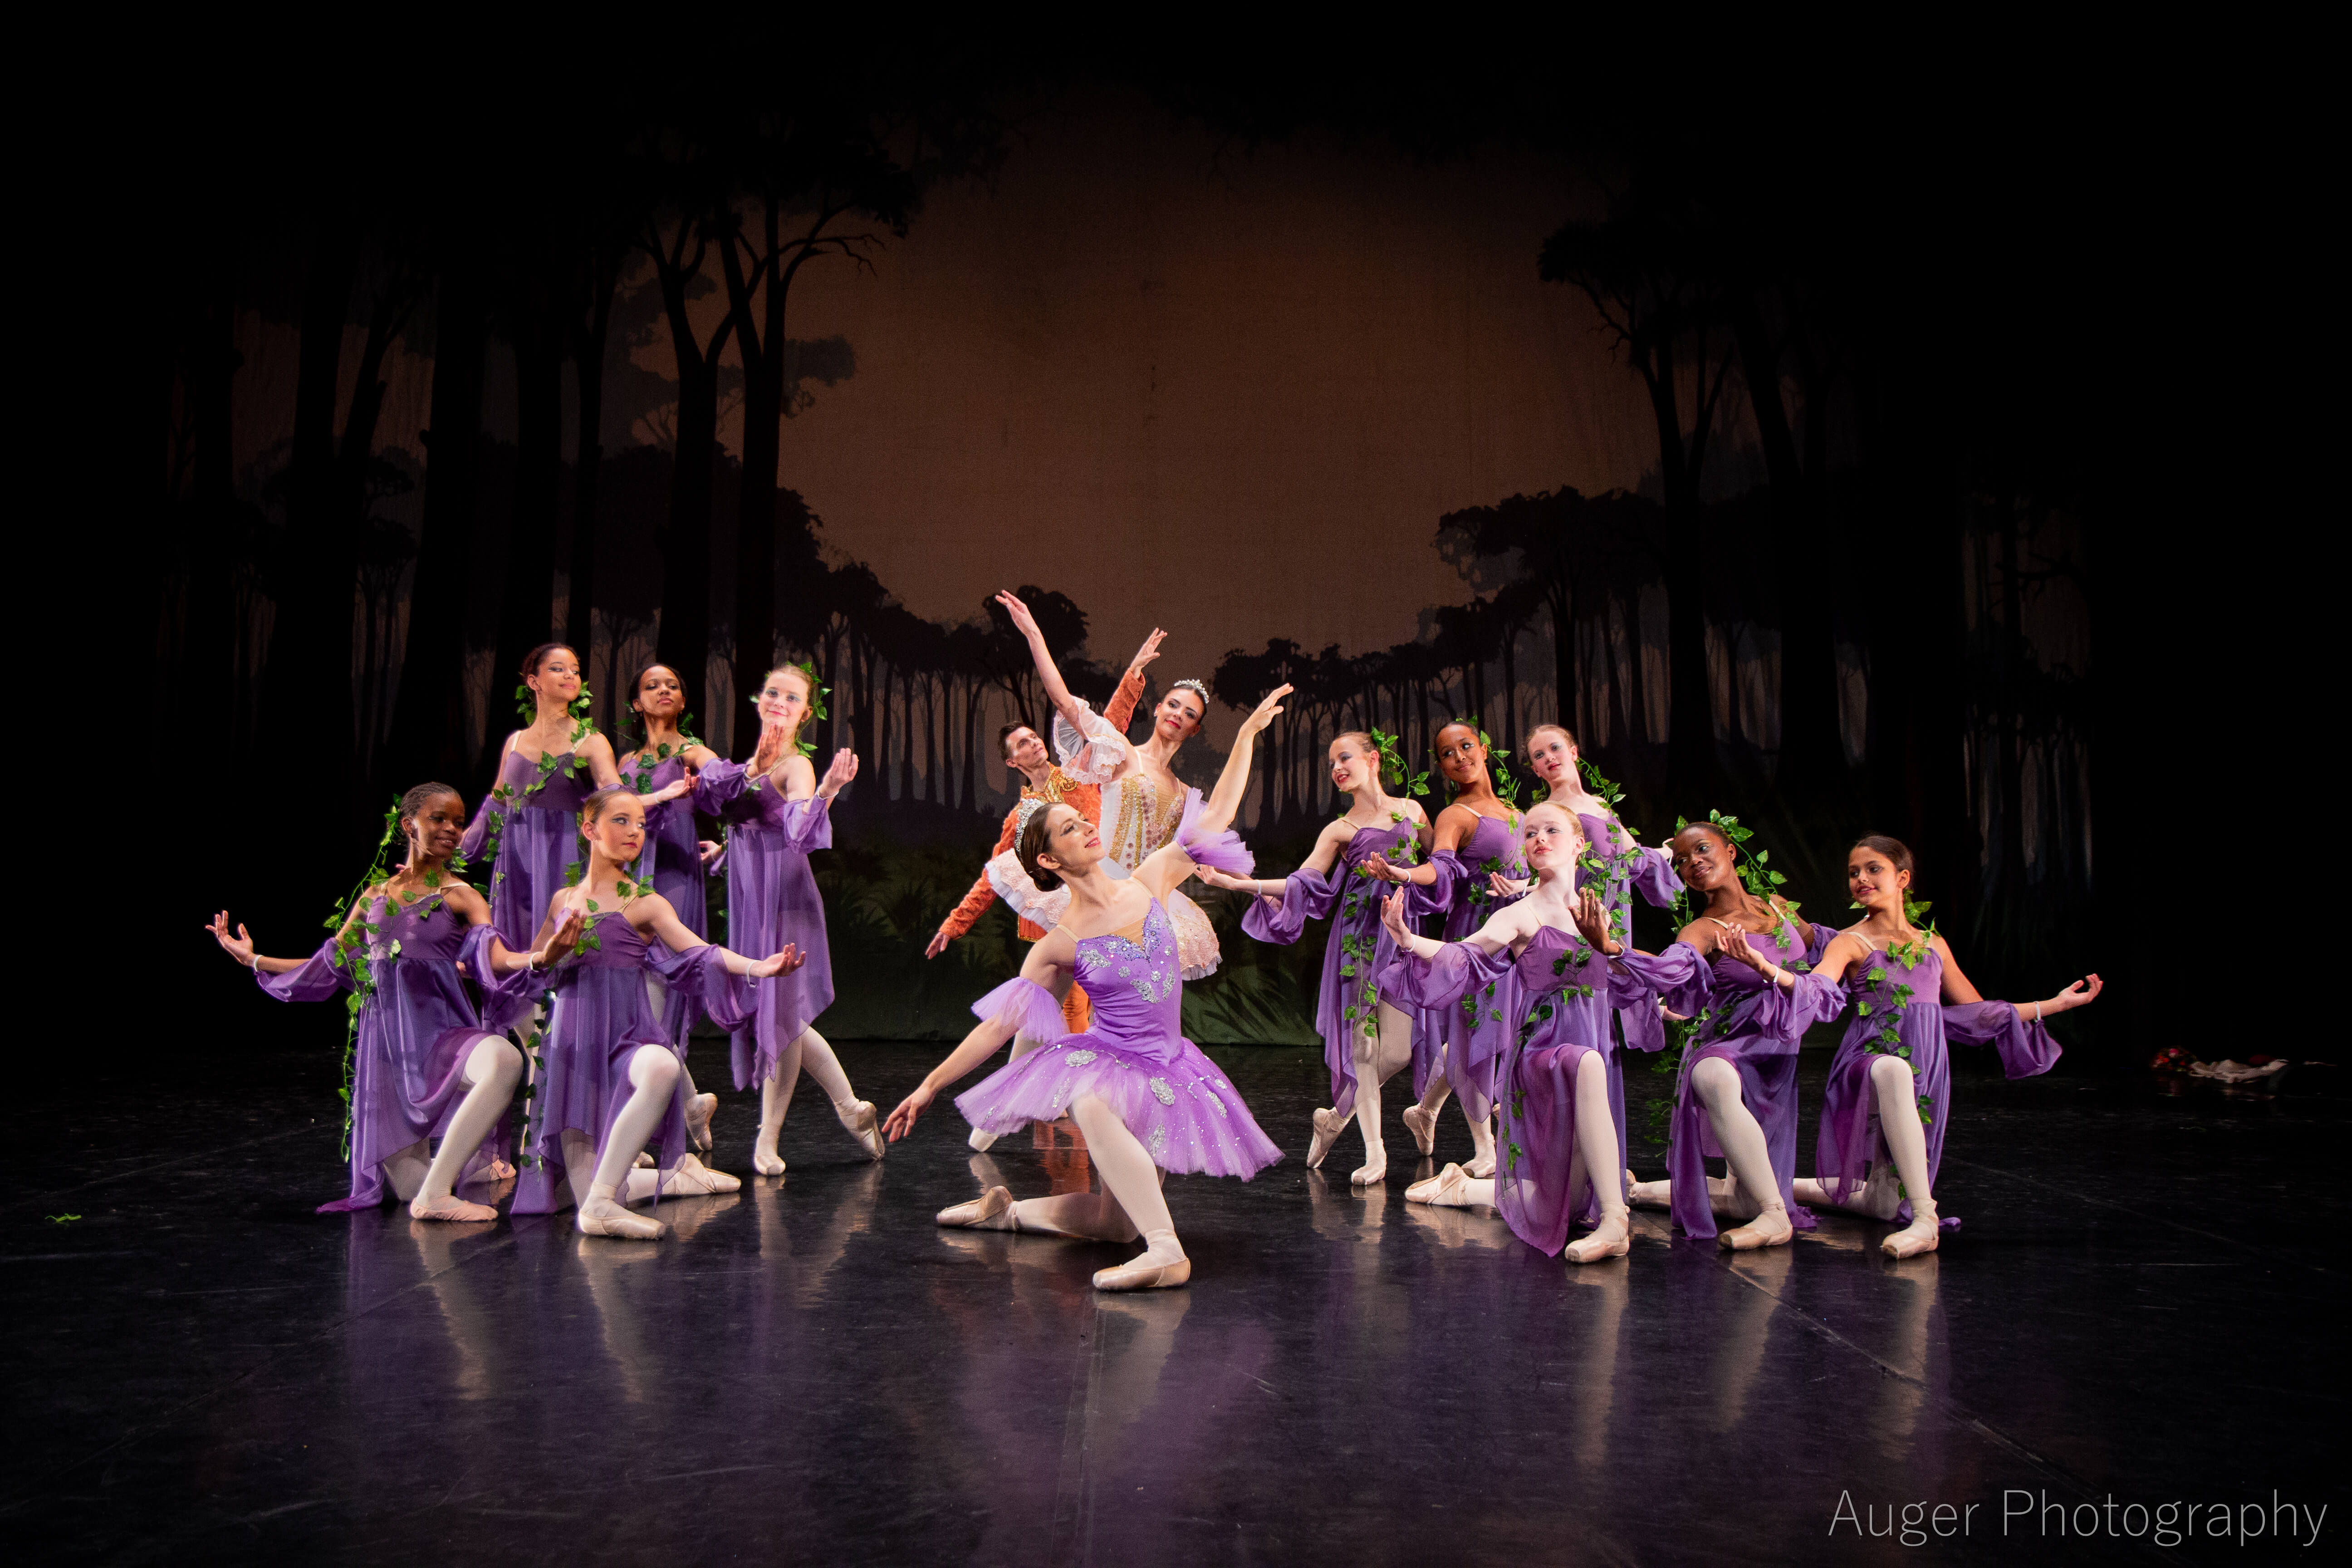 Russian School of Ballet